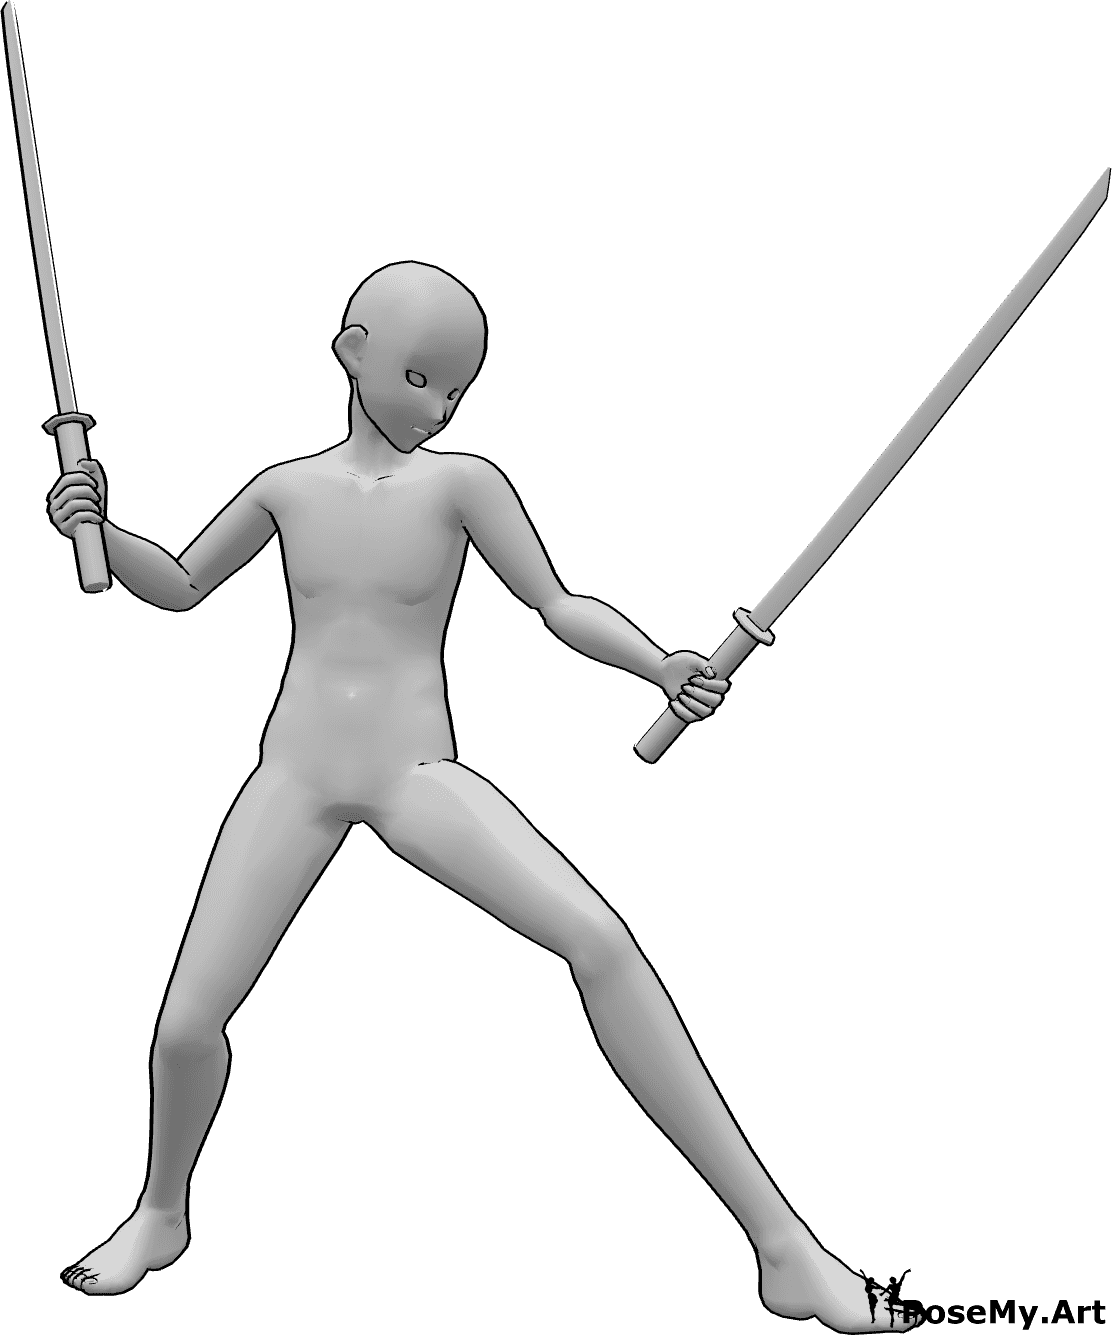 Riferimento alle pose- Posa ninja maschile Anime - Uomo anonimo tiene la katana in entrambe le mani, guarda a sinistra ed è pronto a combattere.